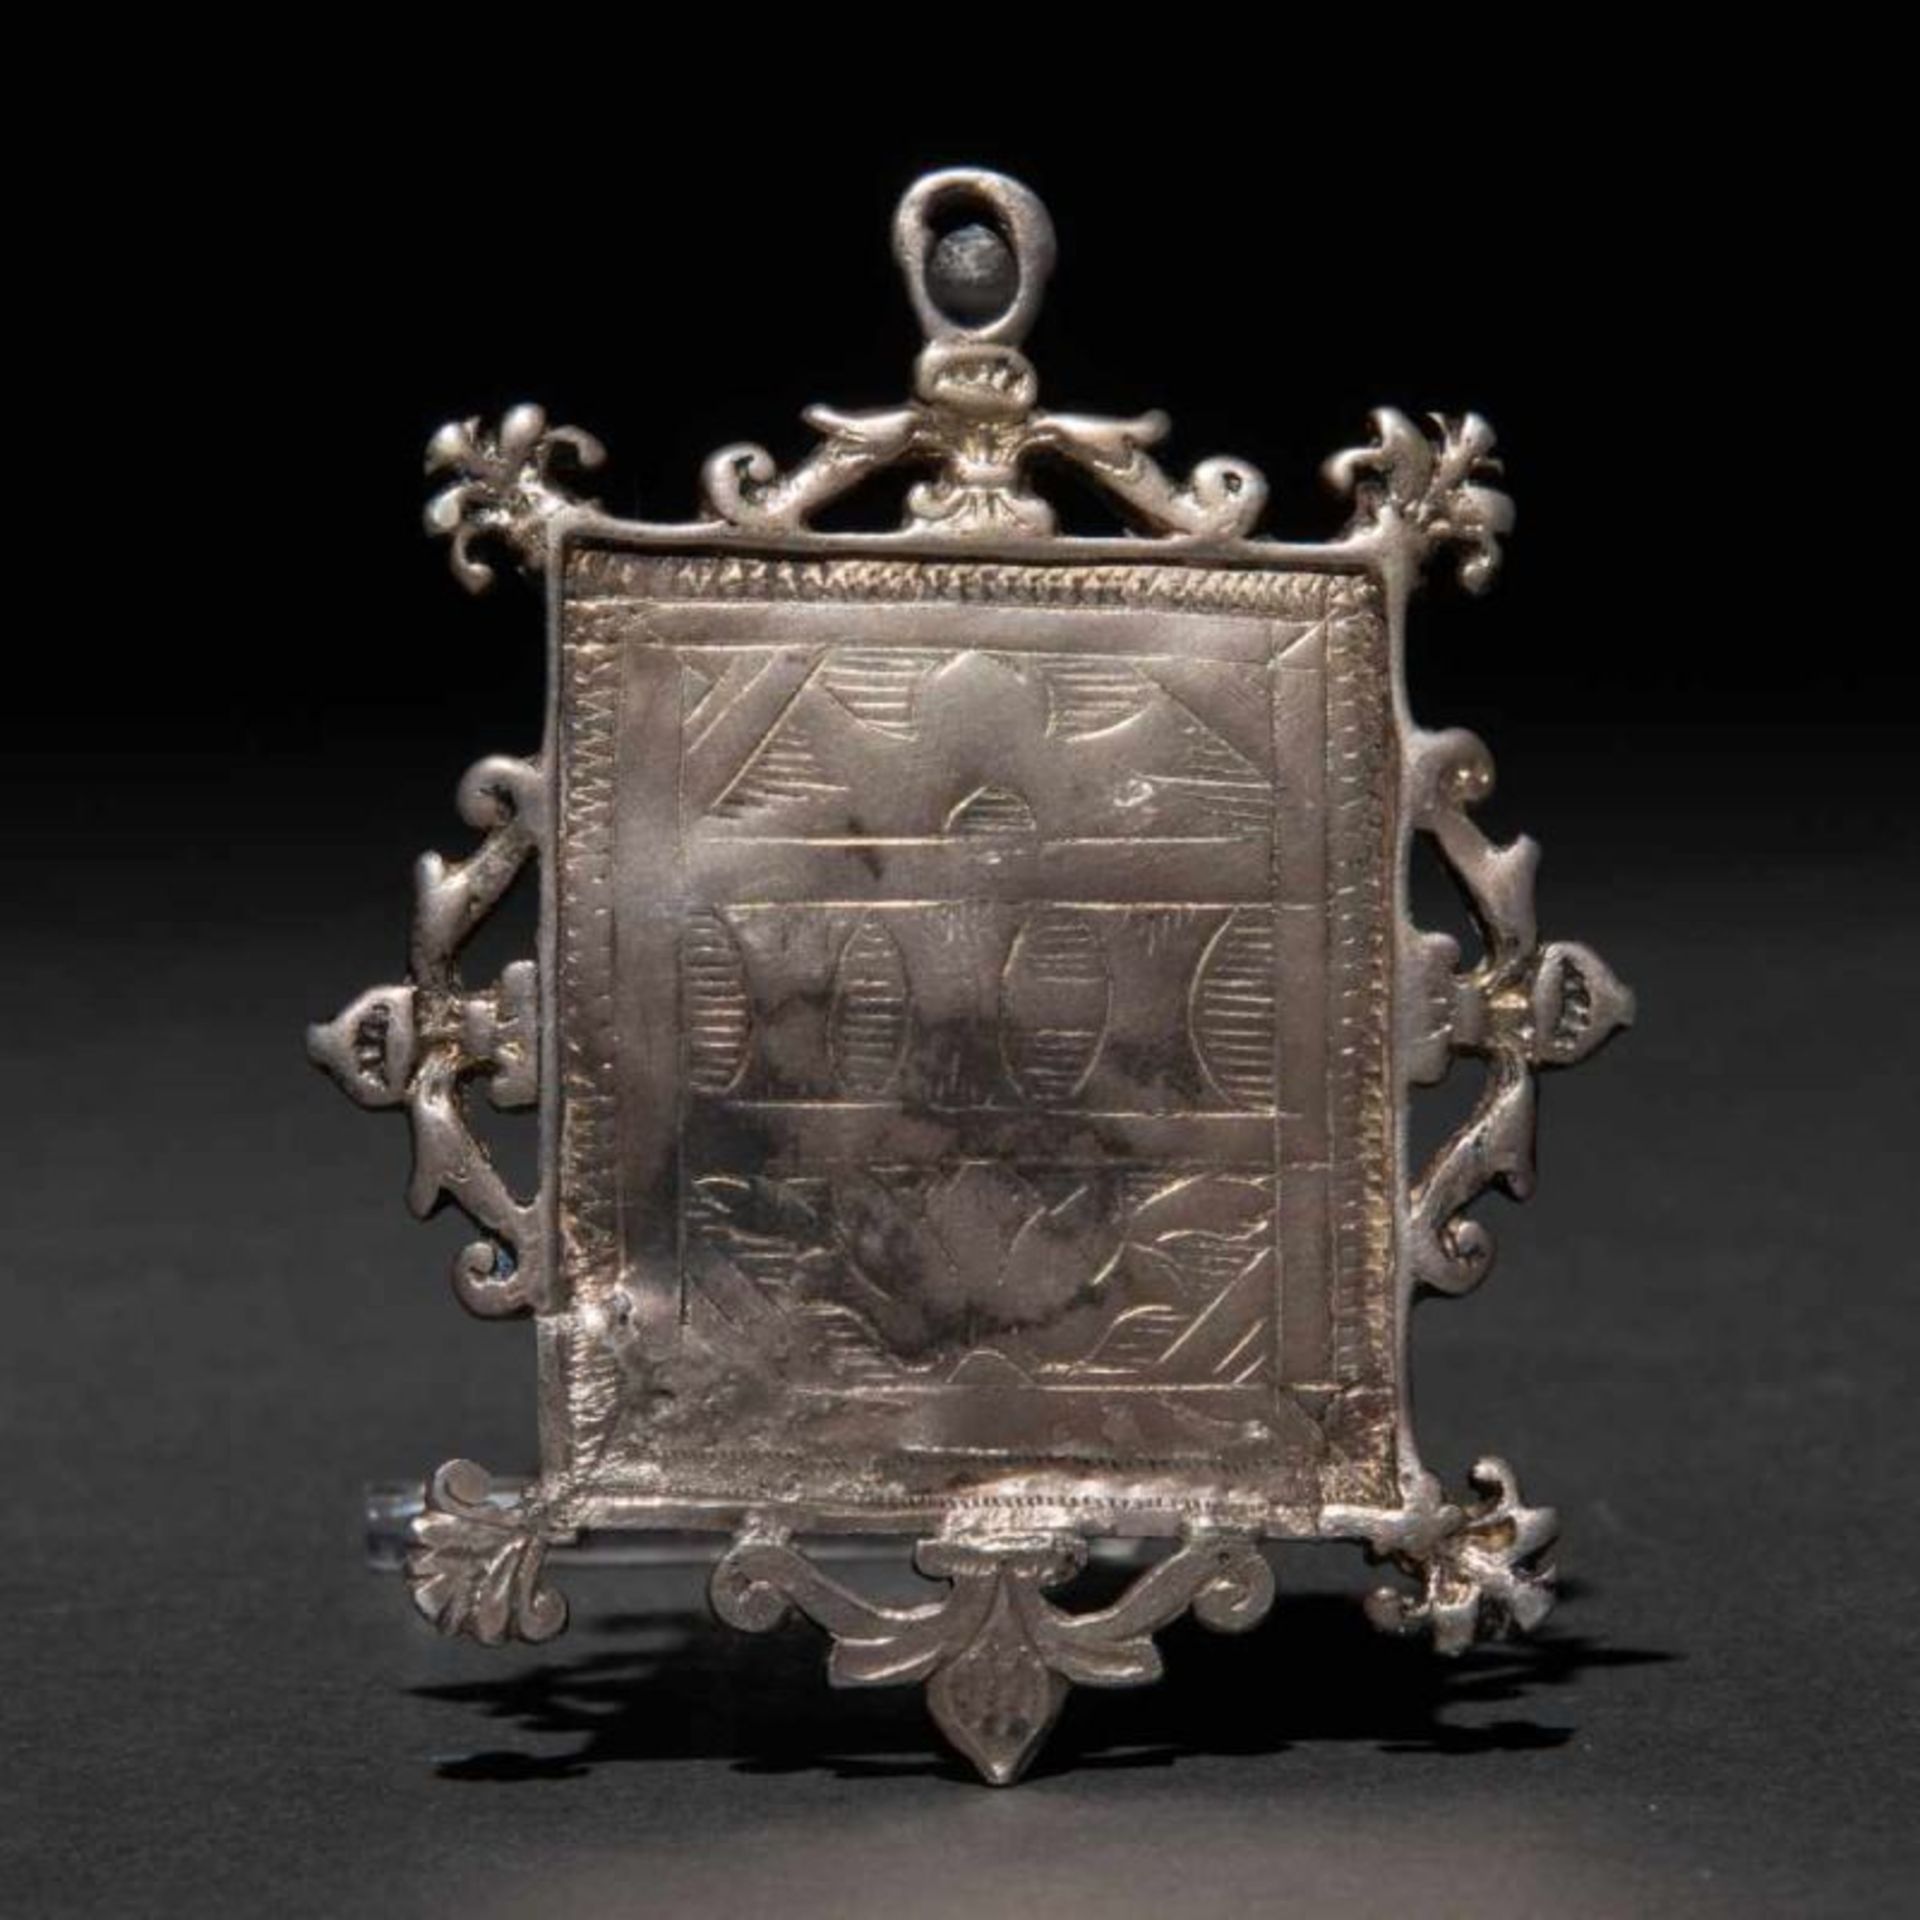 Medalla de Paterna en plata del siglo XVIPresenta decoración grabada.8,5 x 6 cms.